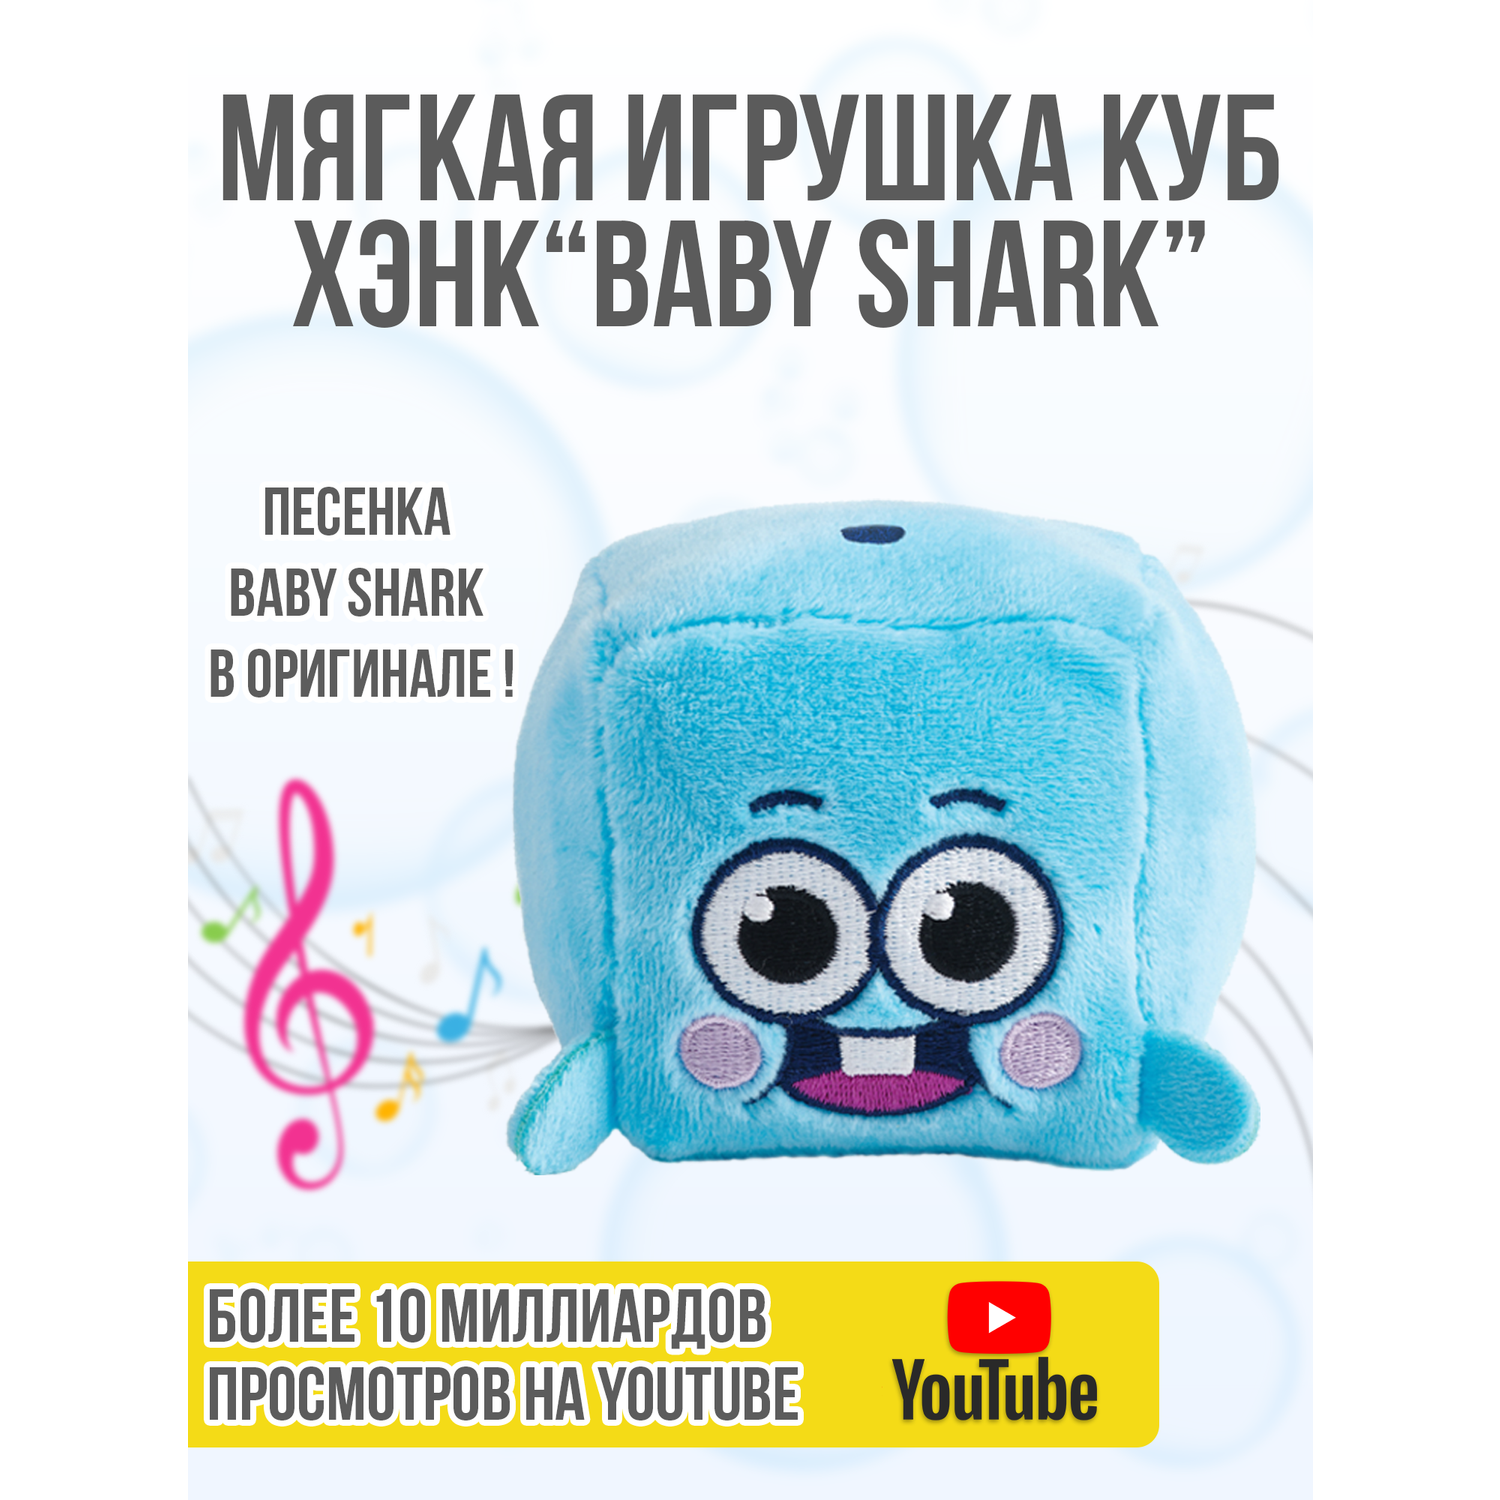 Плюшевый кубик Wow Wee Музыкальный друзья Baby Shark Хэнк 61506 - фото 4